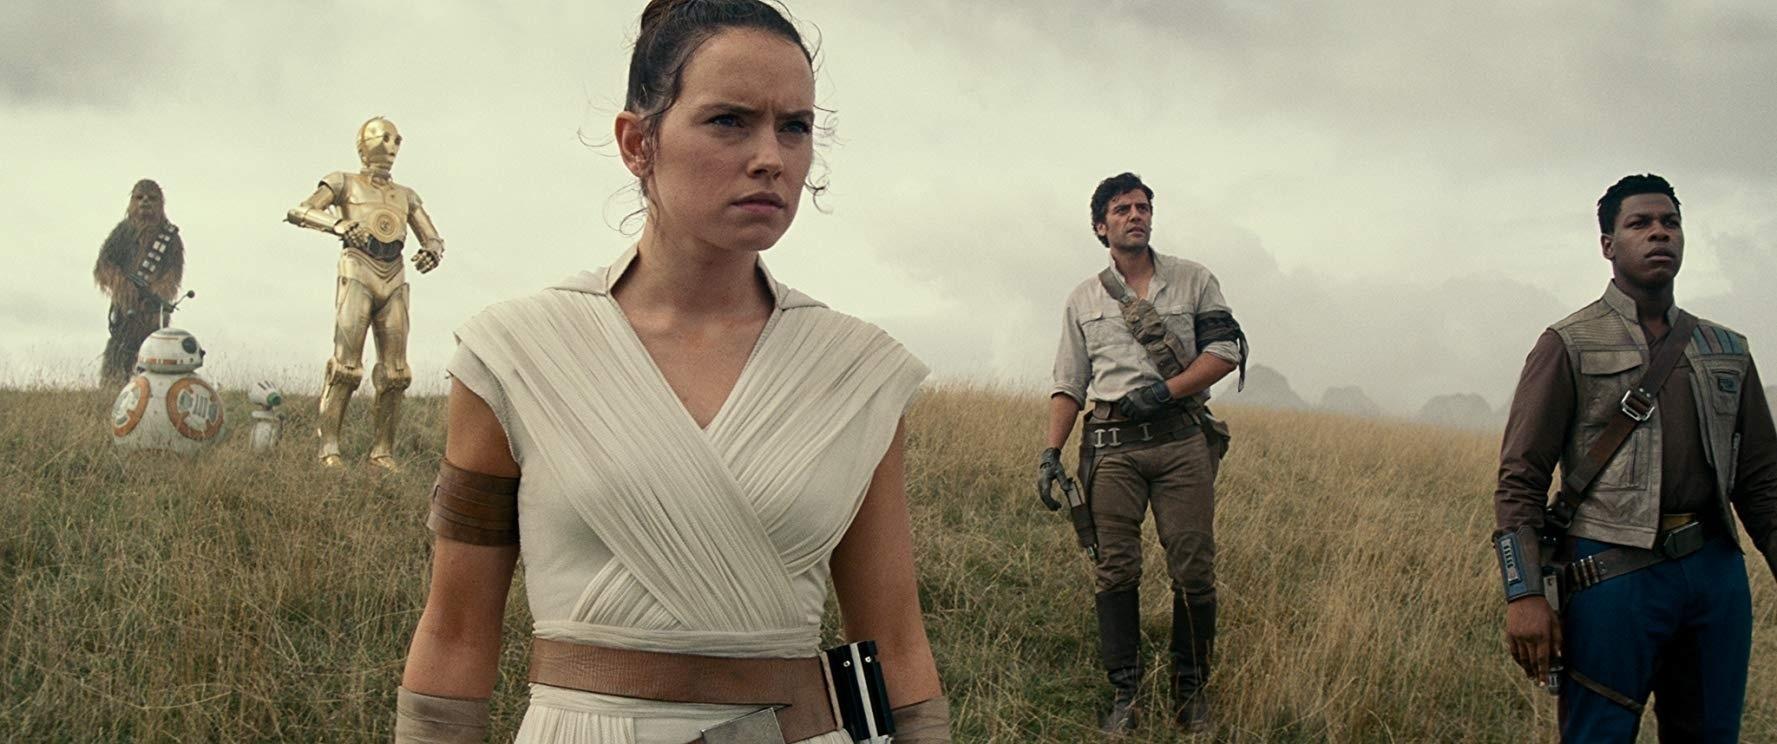 Star Wars 9 terá “uma das lutas mais épicas da saga”, diz atriz